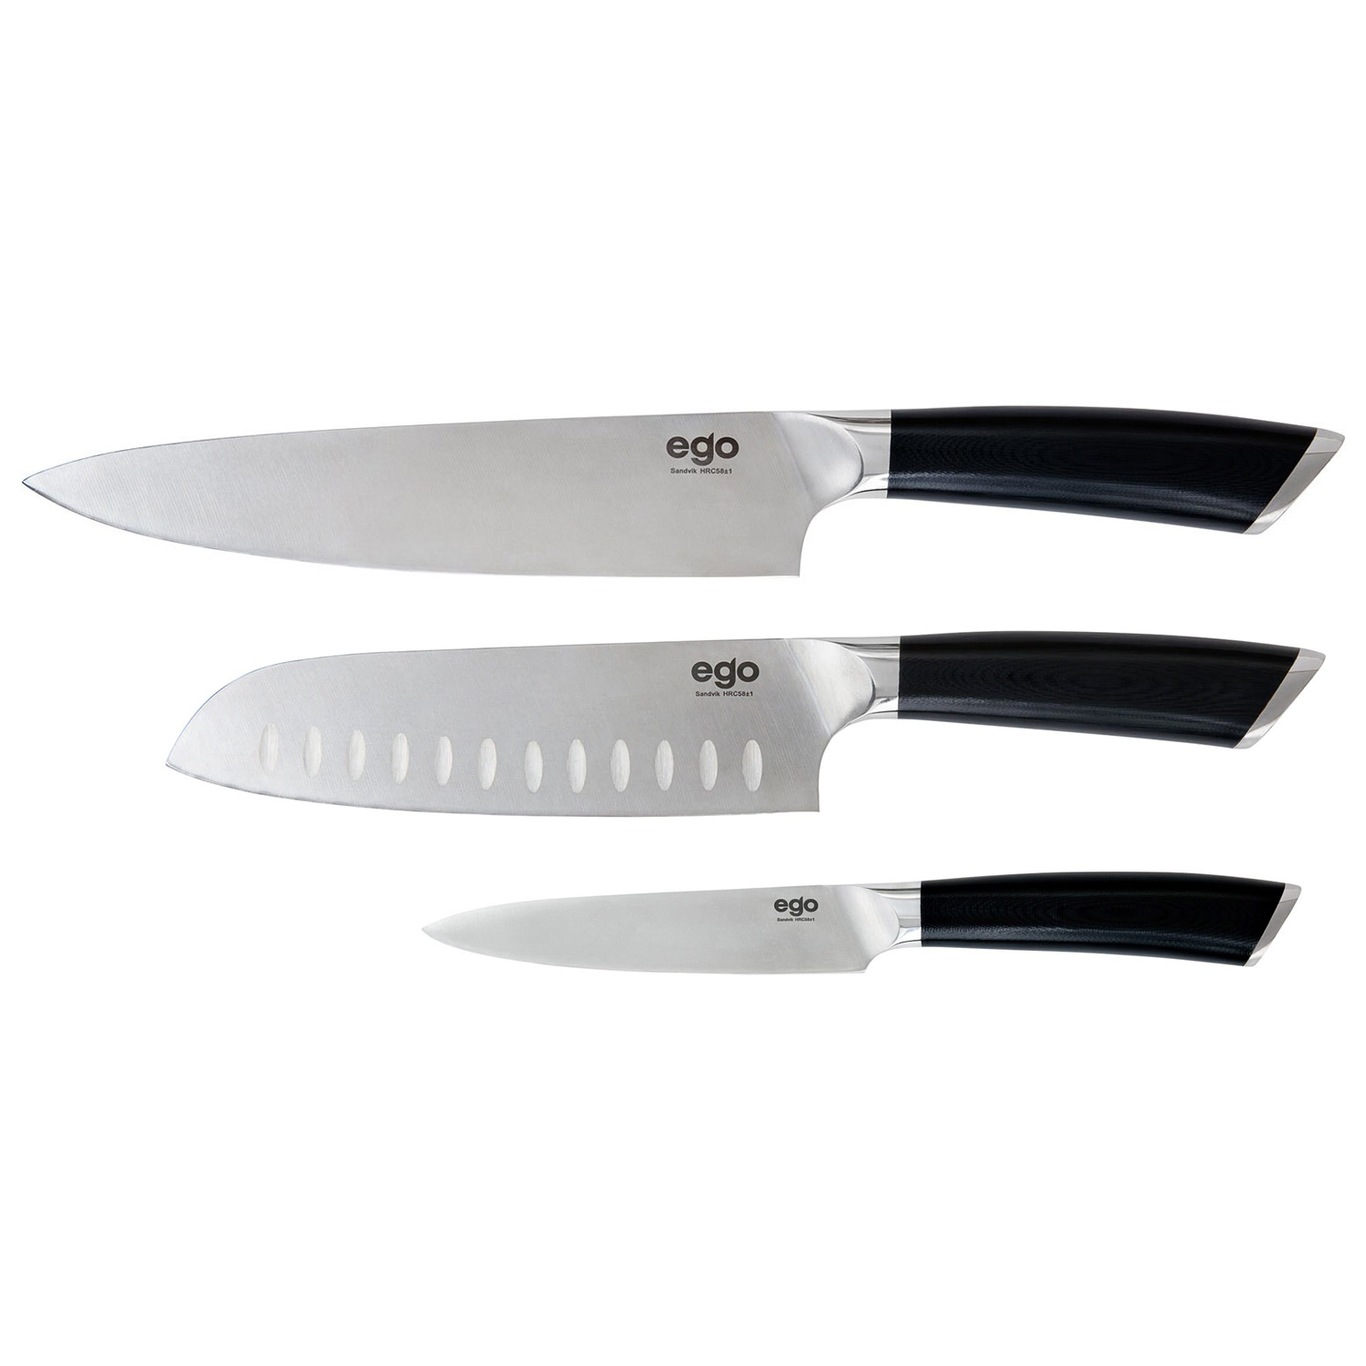 https://royaldesign.com/image/2/ego-knife-set-3-pcs-0?w=800&quality=80